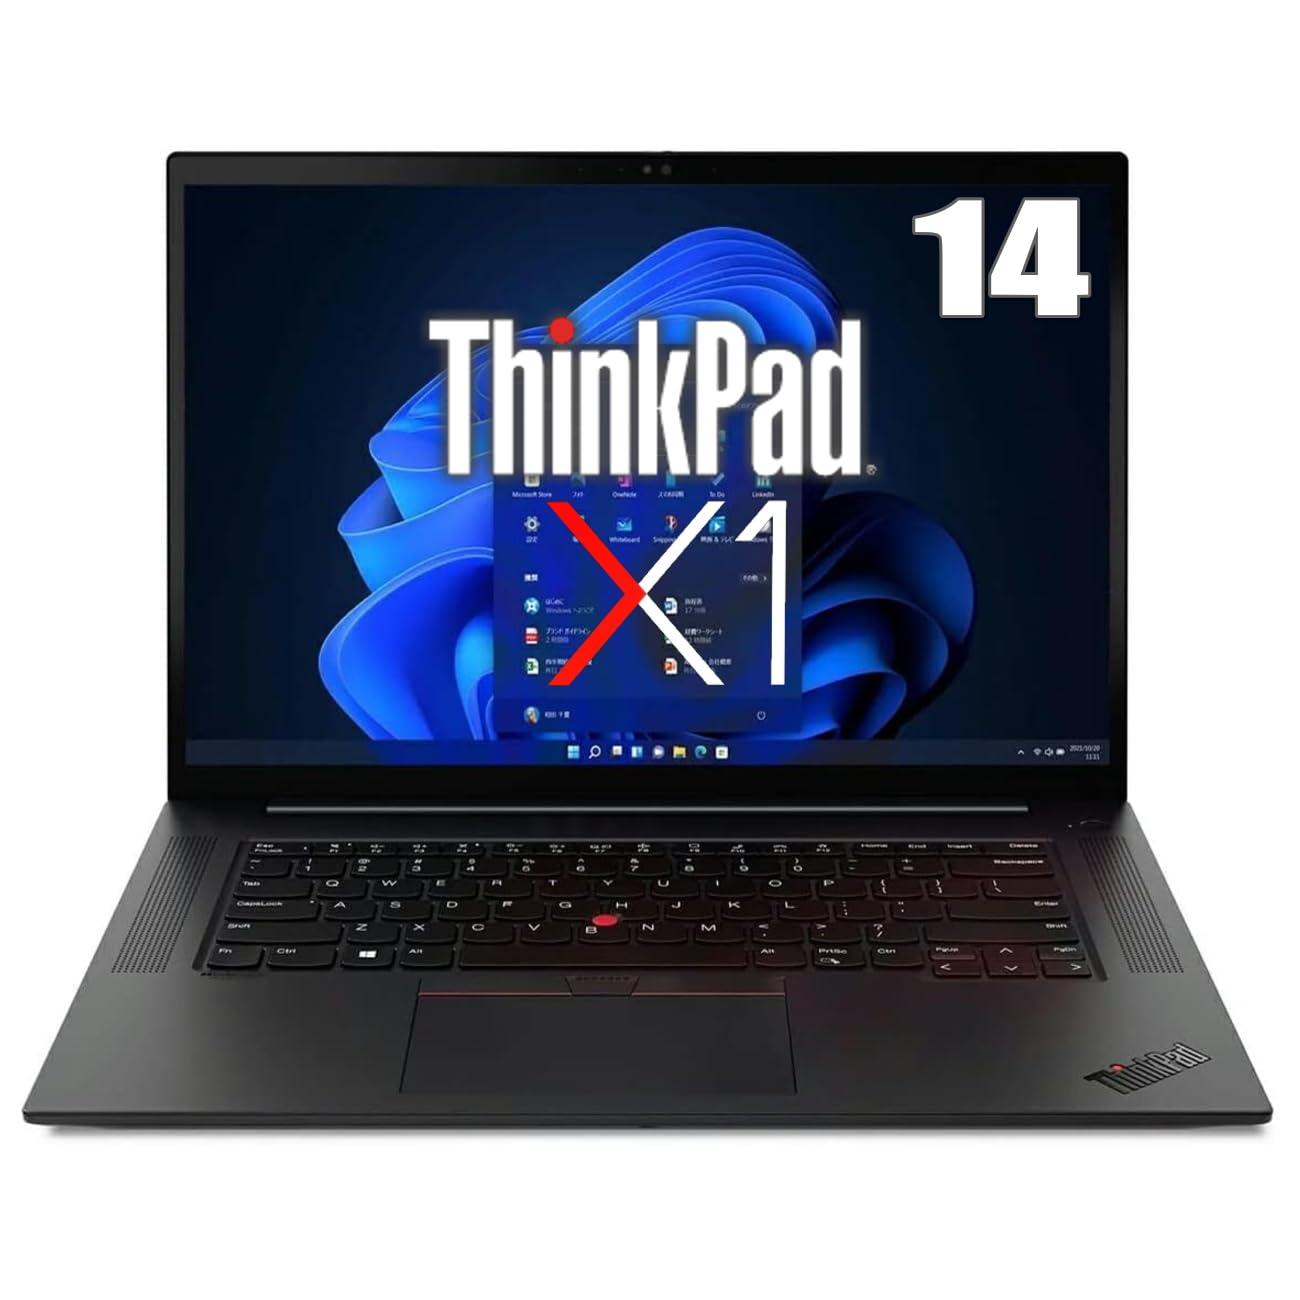 ThinkPad X1 Carbon Gen9 (14.0C` 11 Ce Core i5 1135G7(Tiger Lake)/2.4GHz/4RA CPUXRA(PassMark)F9856 SSD256GB 8GB Intel Iris Xe Graphics Win10Pro 64bit)(20XW0013JP)